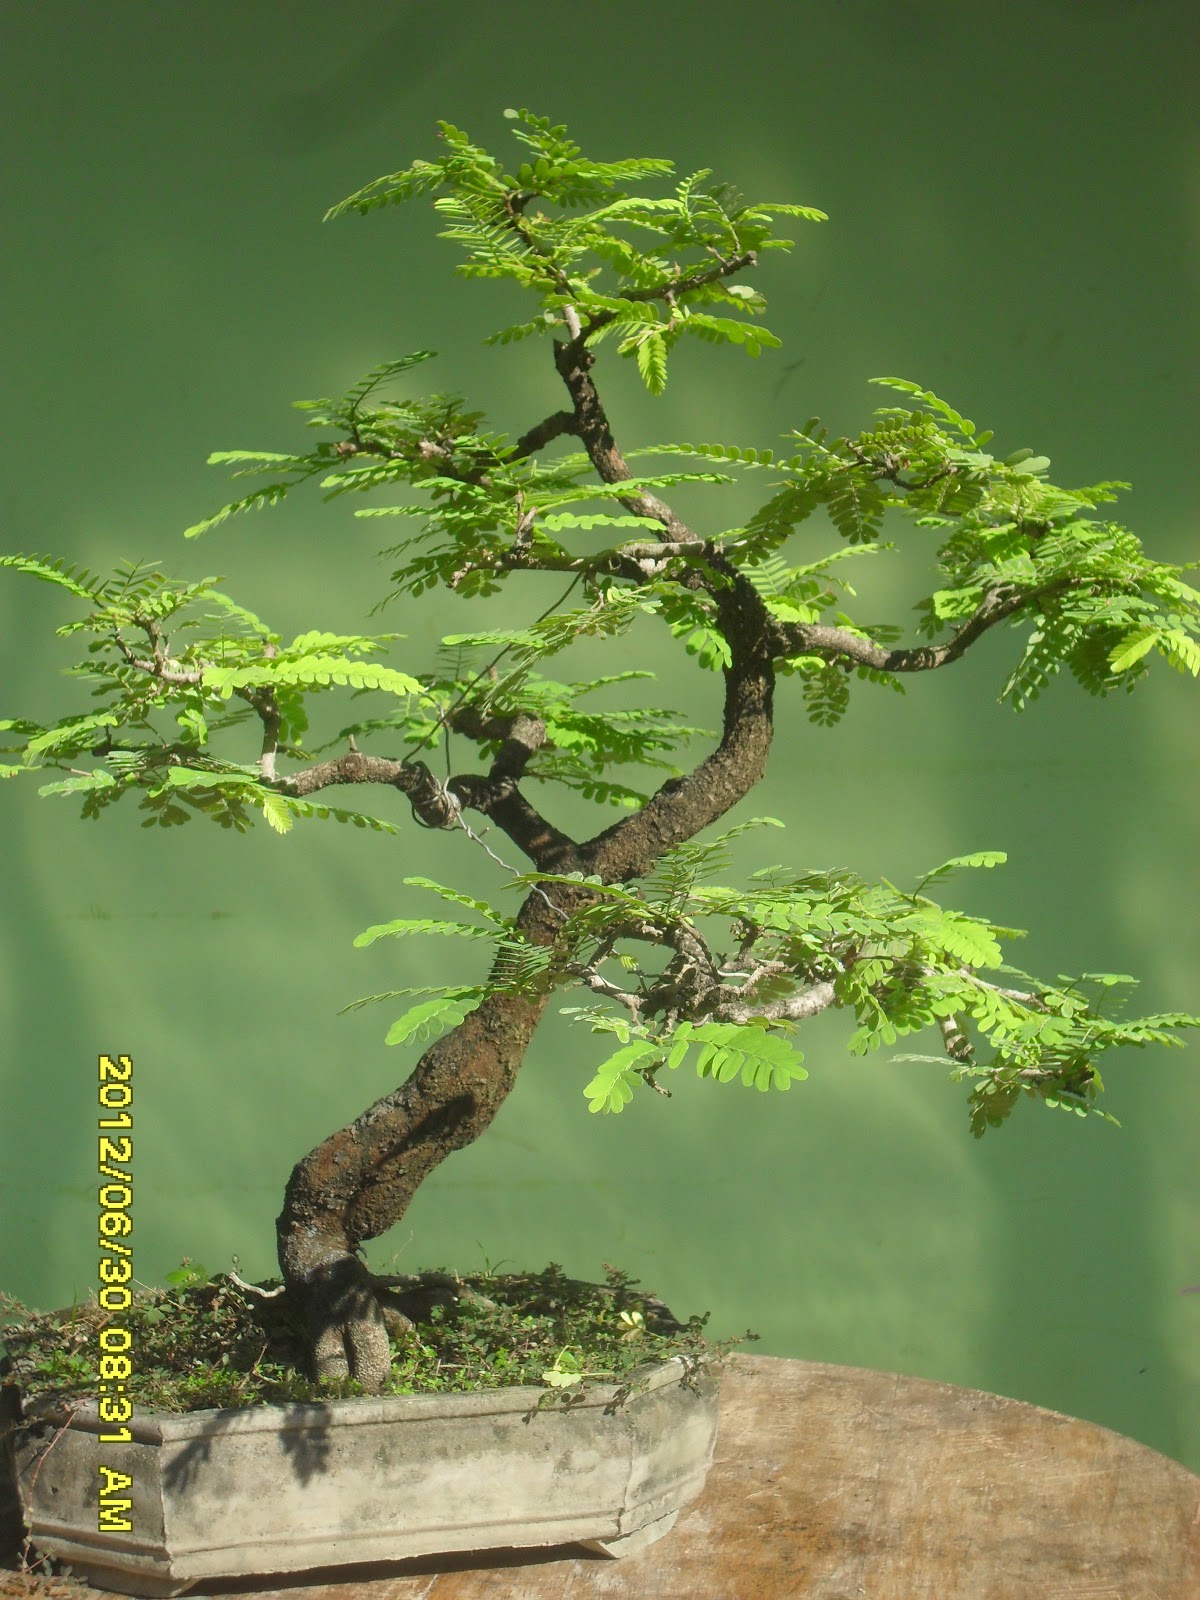 Kumpulan Artikel Tentang Bonsai  kumpulan gambar bonsai 